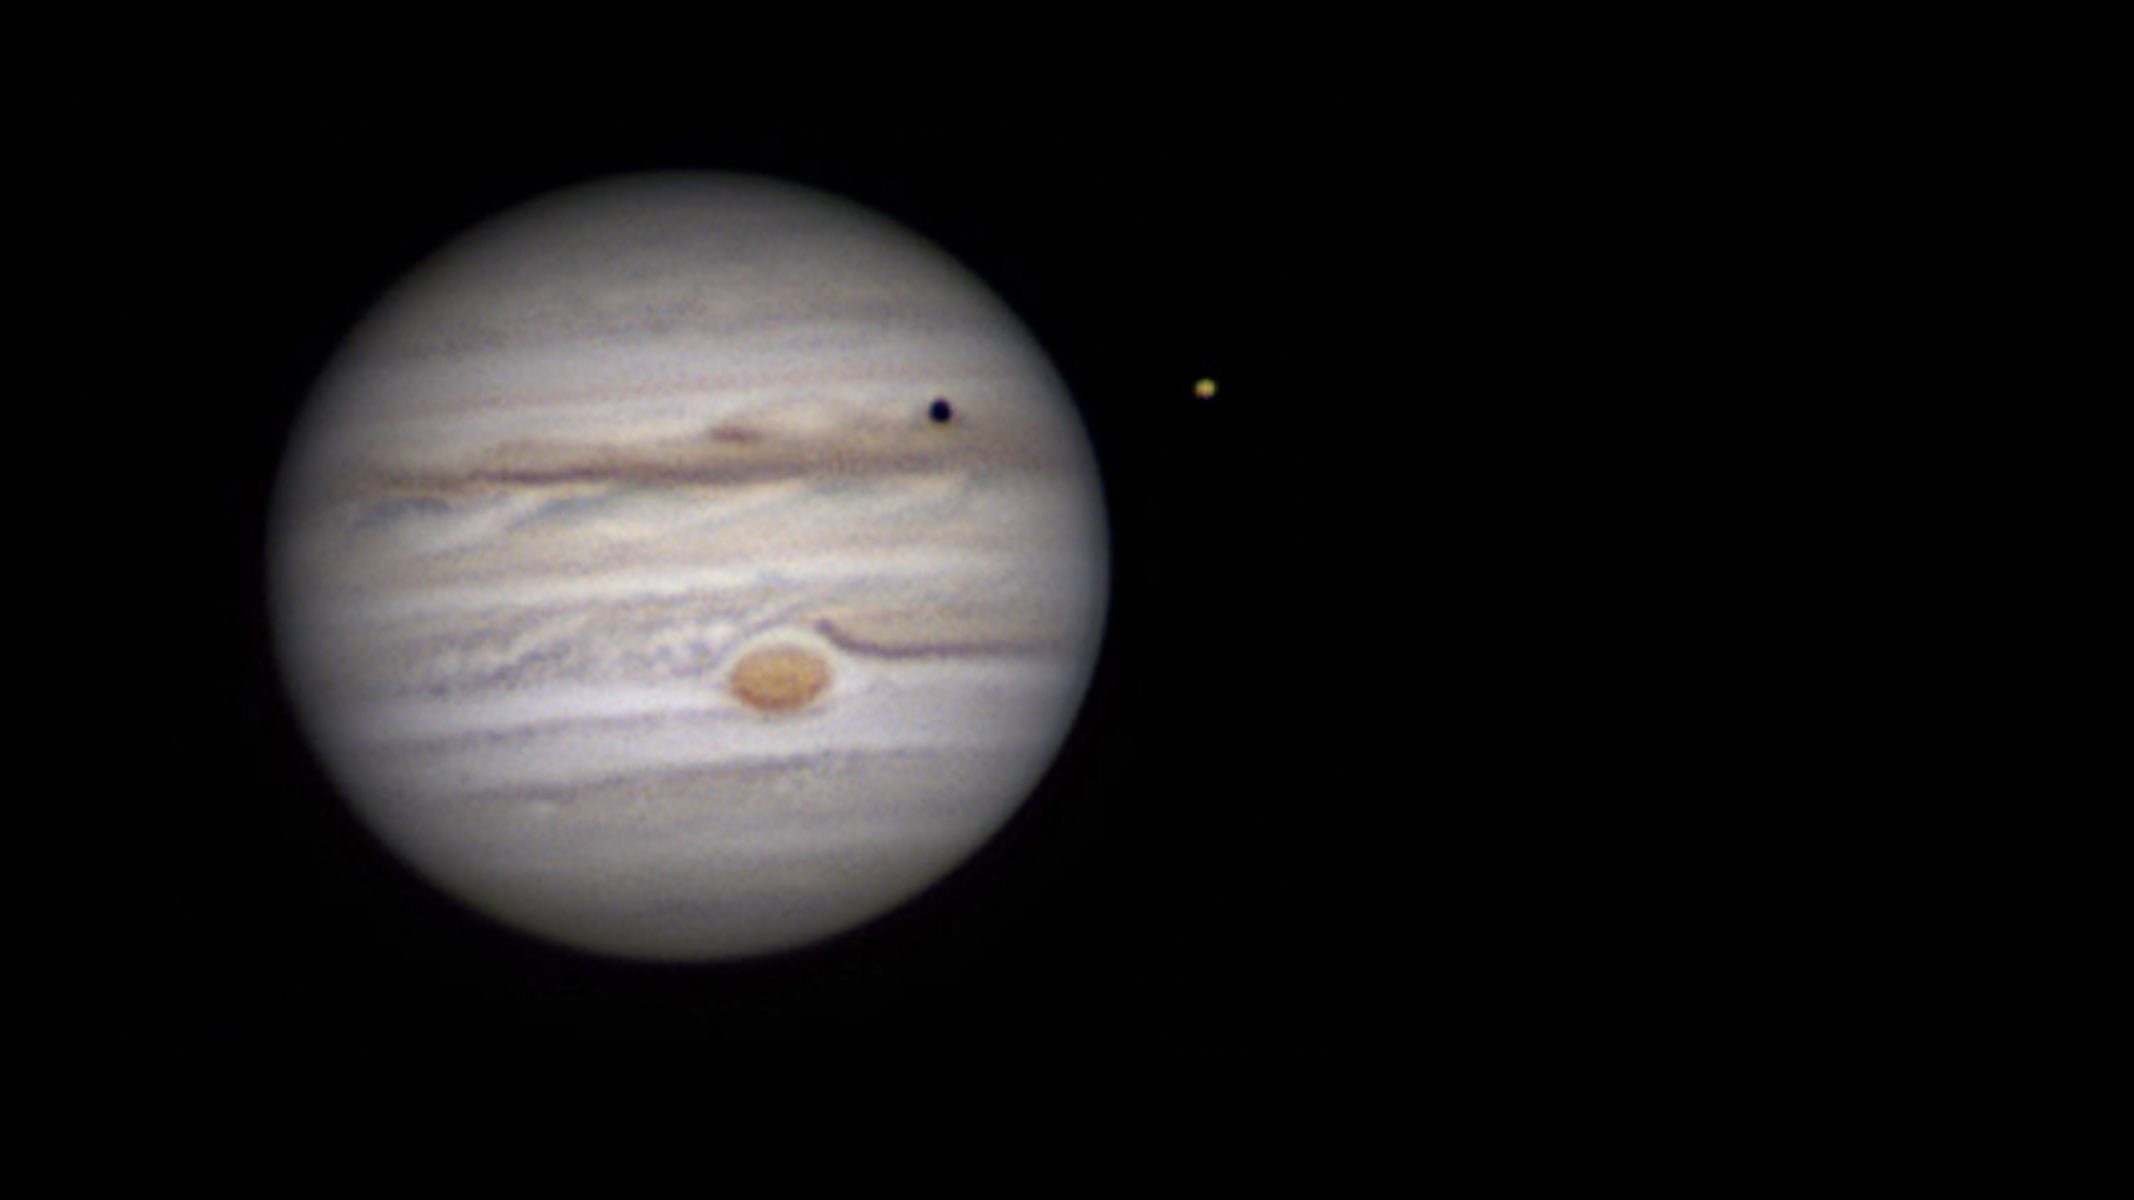 CelestronAdvancedTelescopeで撮影された木星の画像